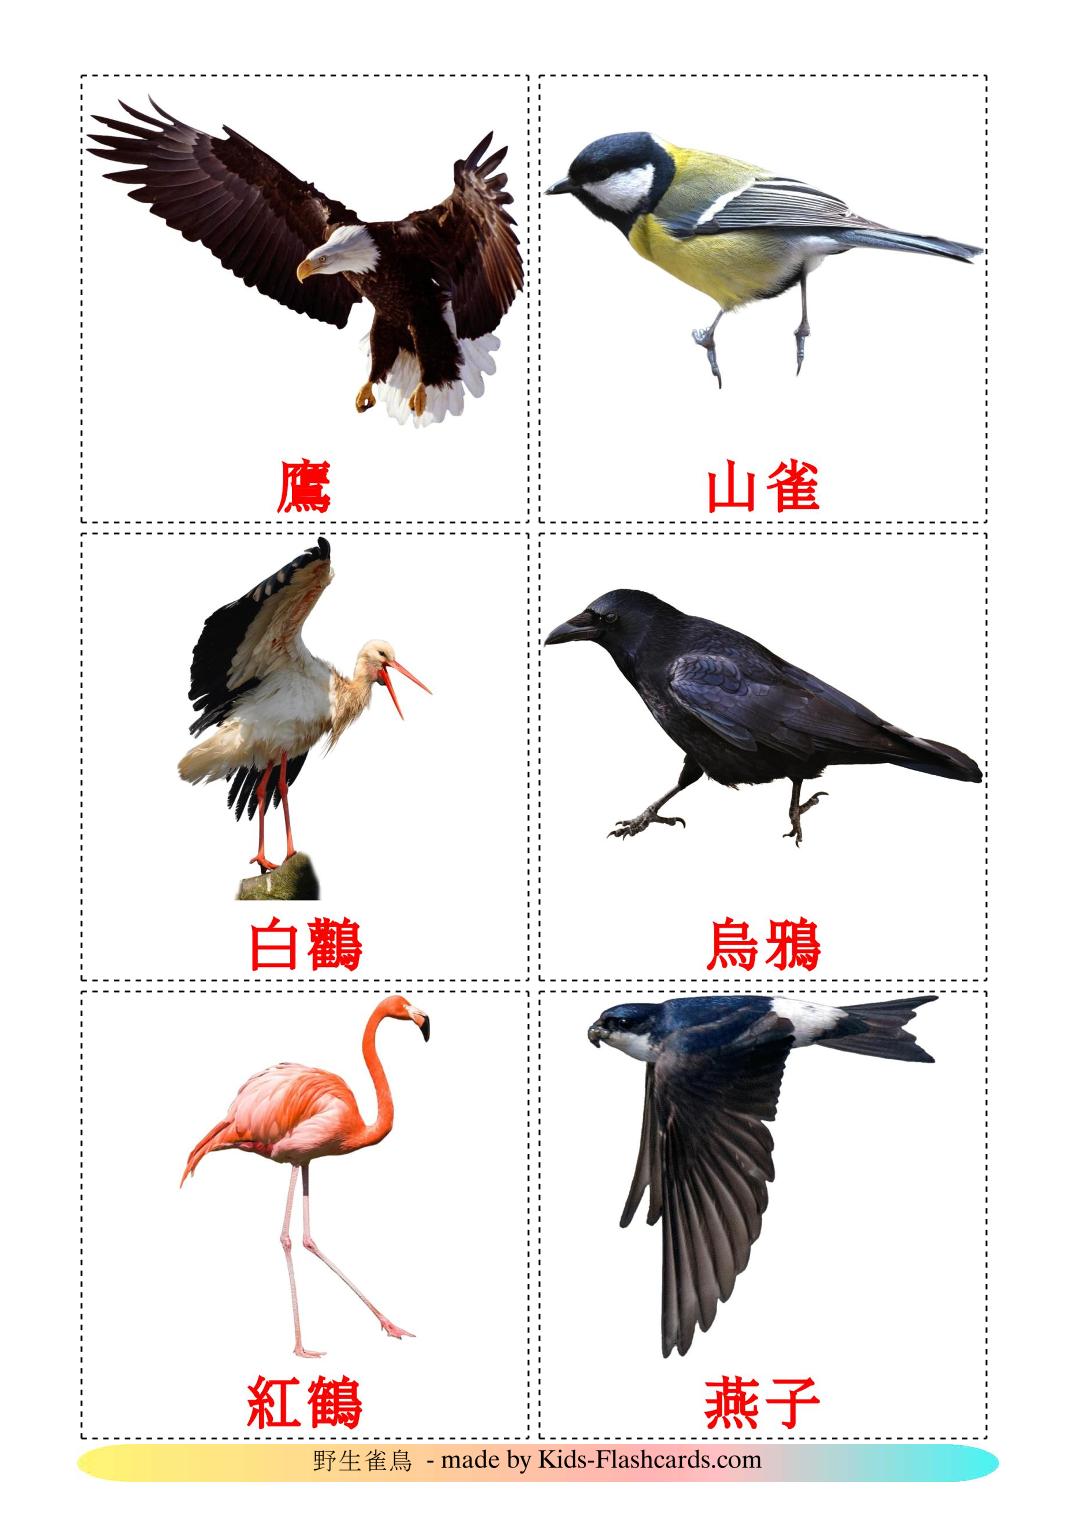 Pájaros salvajes - 18 fichas de chino(tradicional) para imprimir gratis 